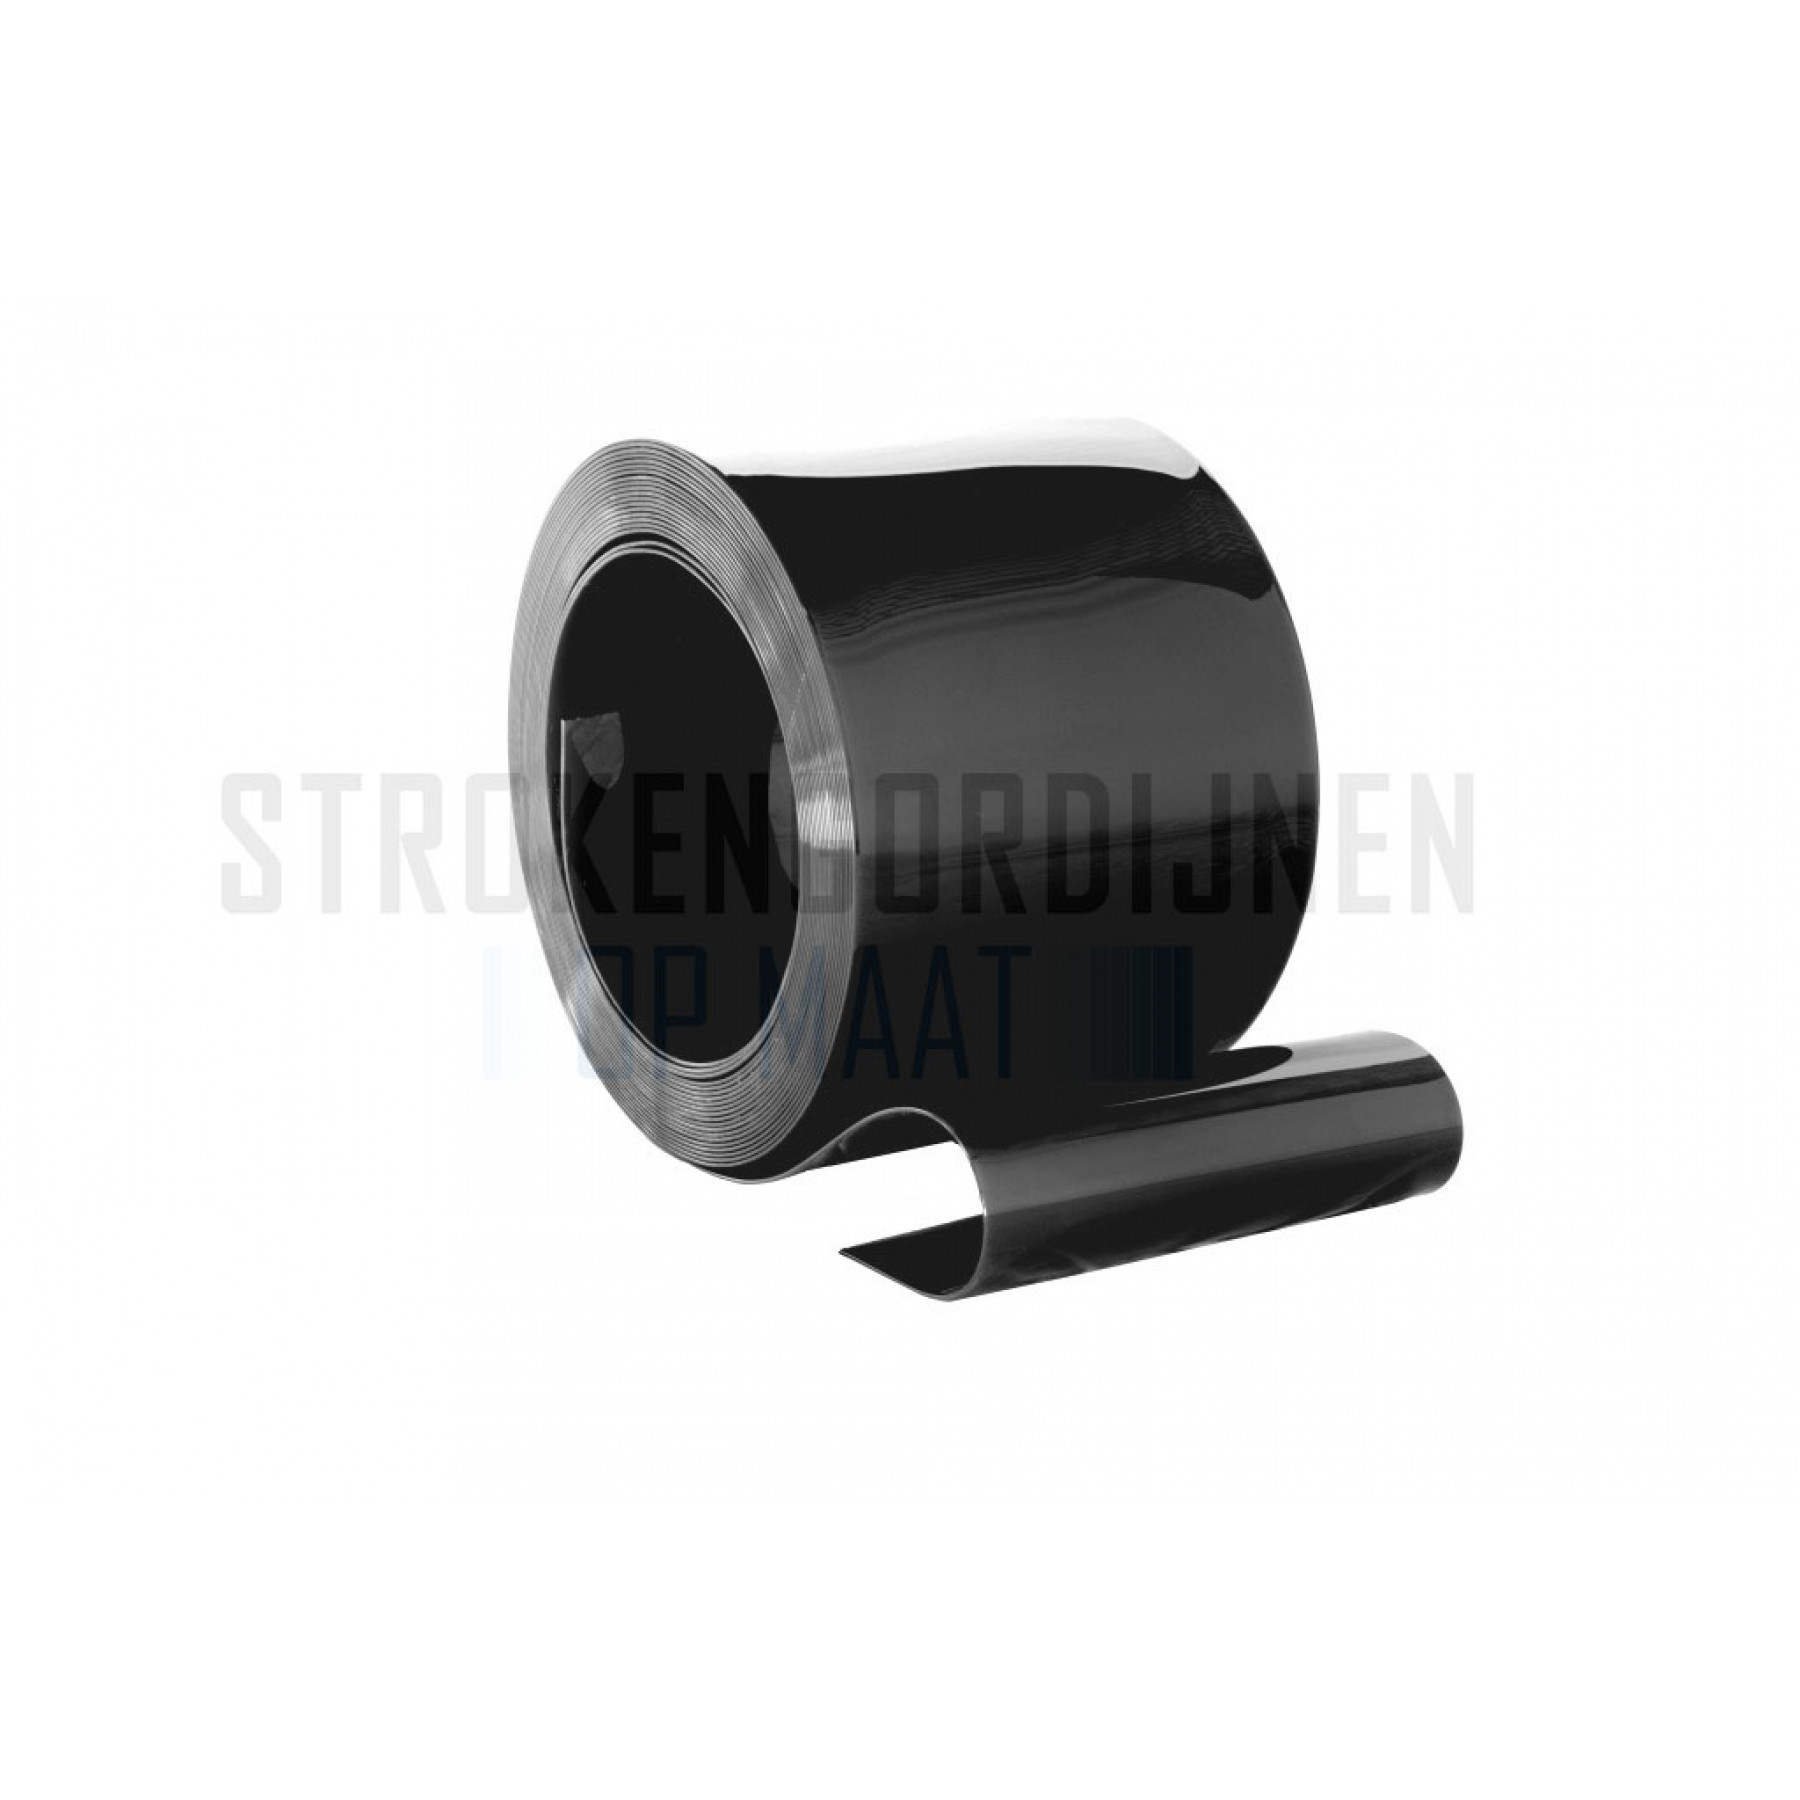 PVC op rol, 200mm breed, 2mm dik, 50 meter lengte, zwart ondoorzichtig